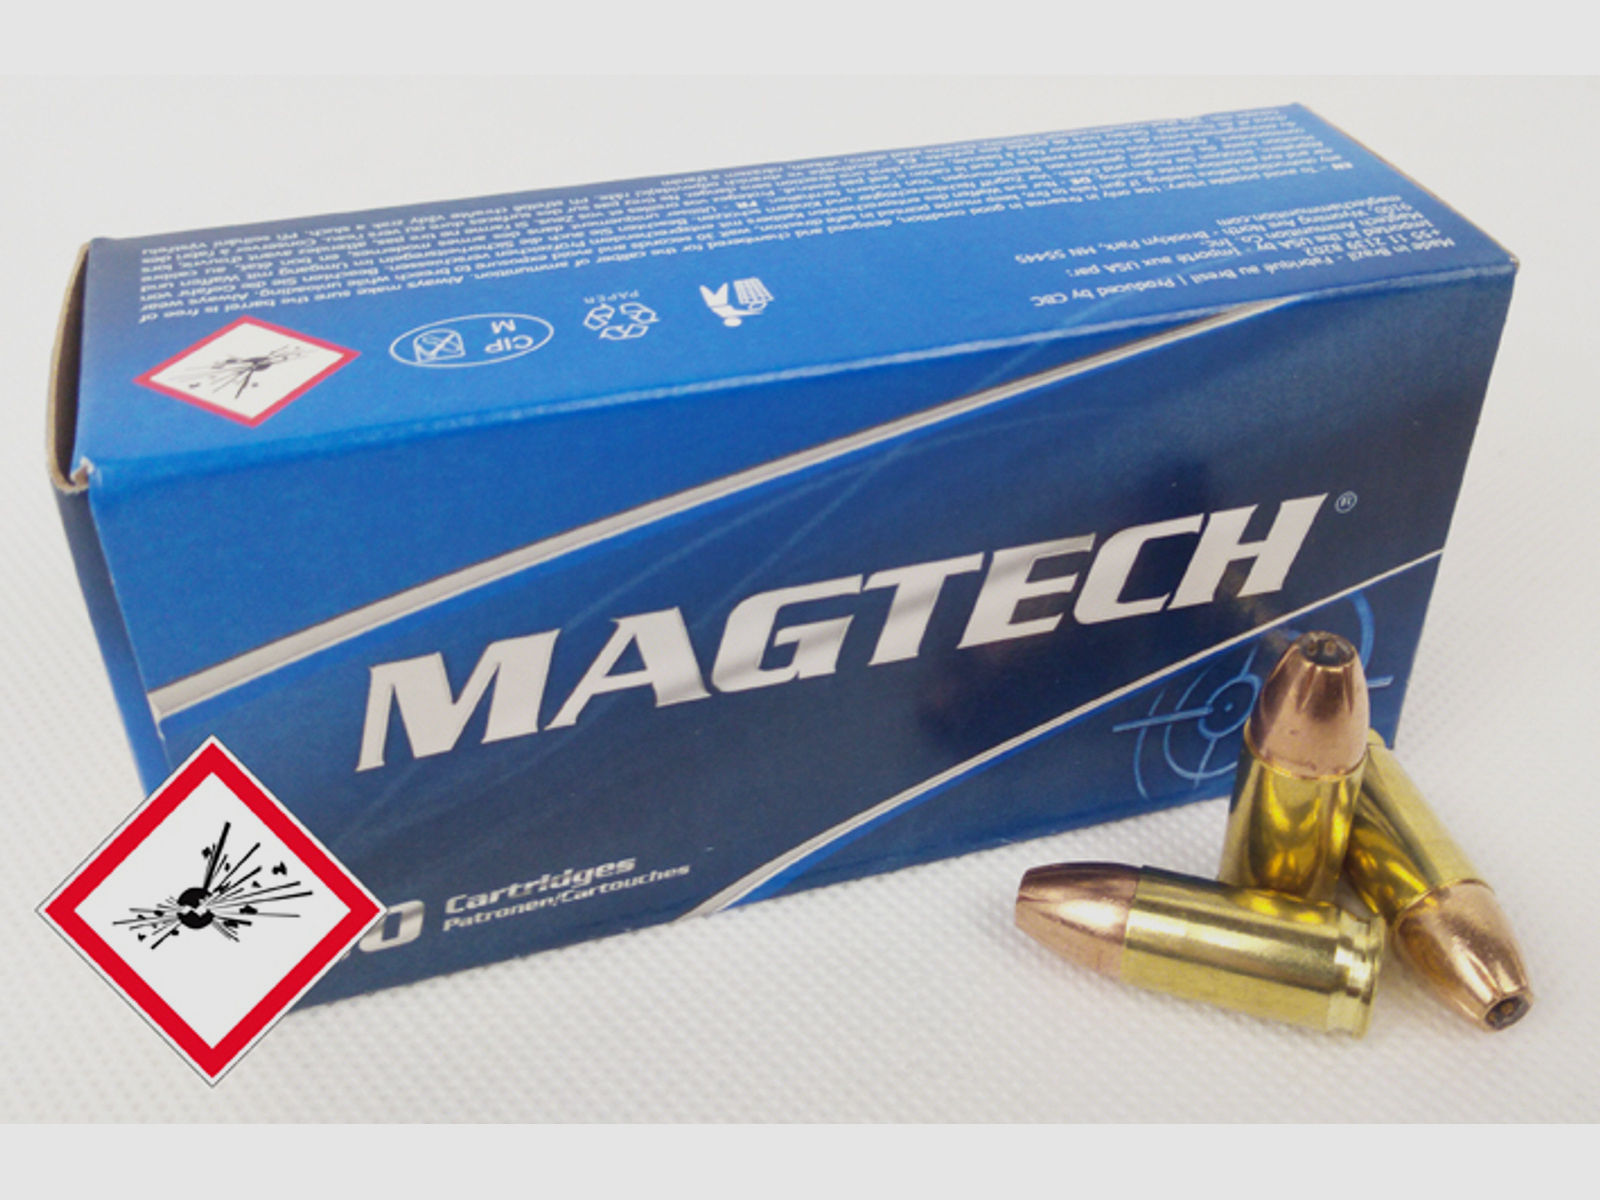 Magtech Pistolenpatrone 9mm Luger JHP 115grs